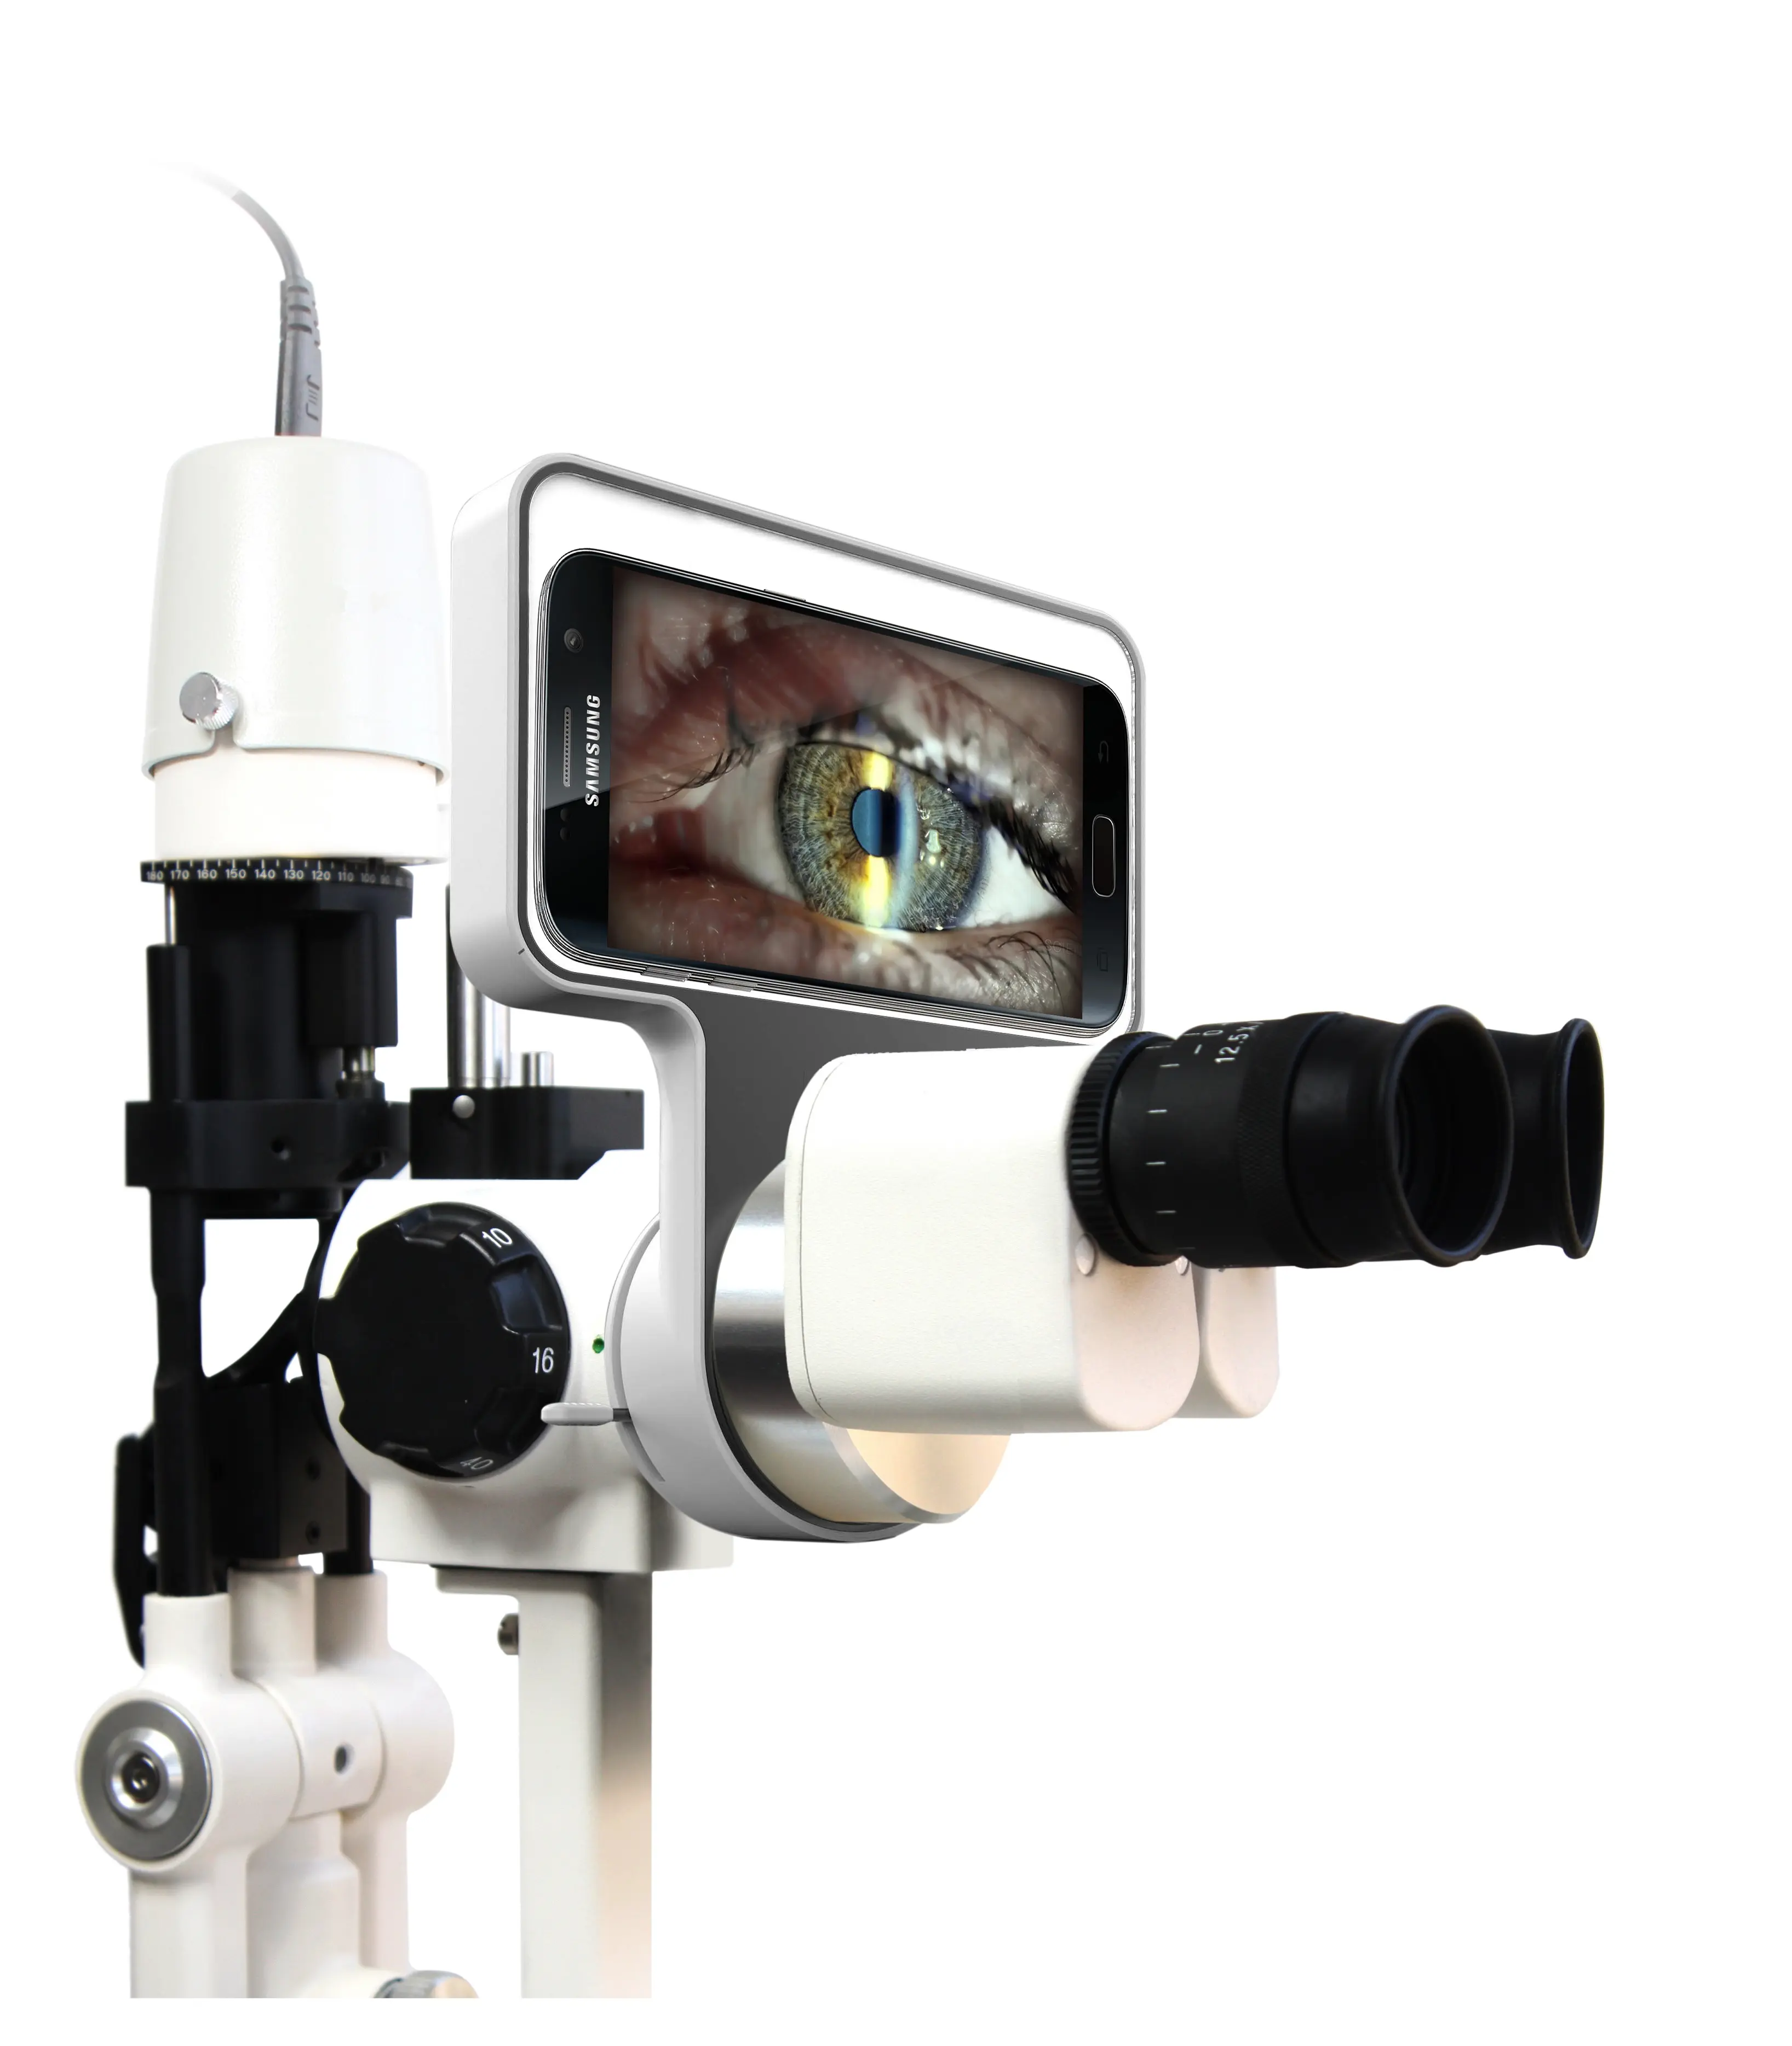 Офтальмологическая щелевая лампа портативный адаптер камеры с бесплатным приложением скачать